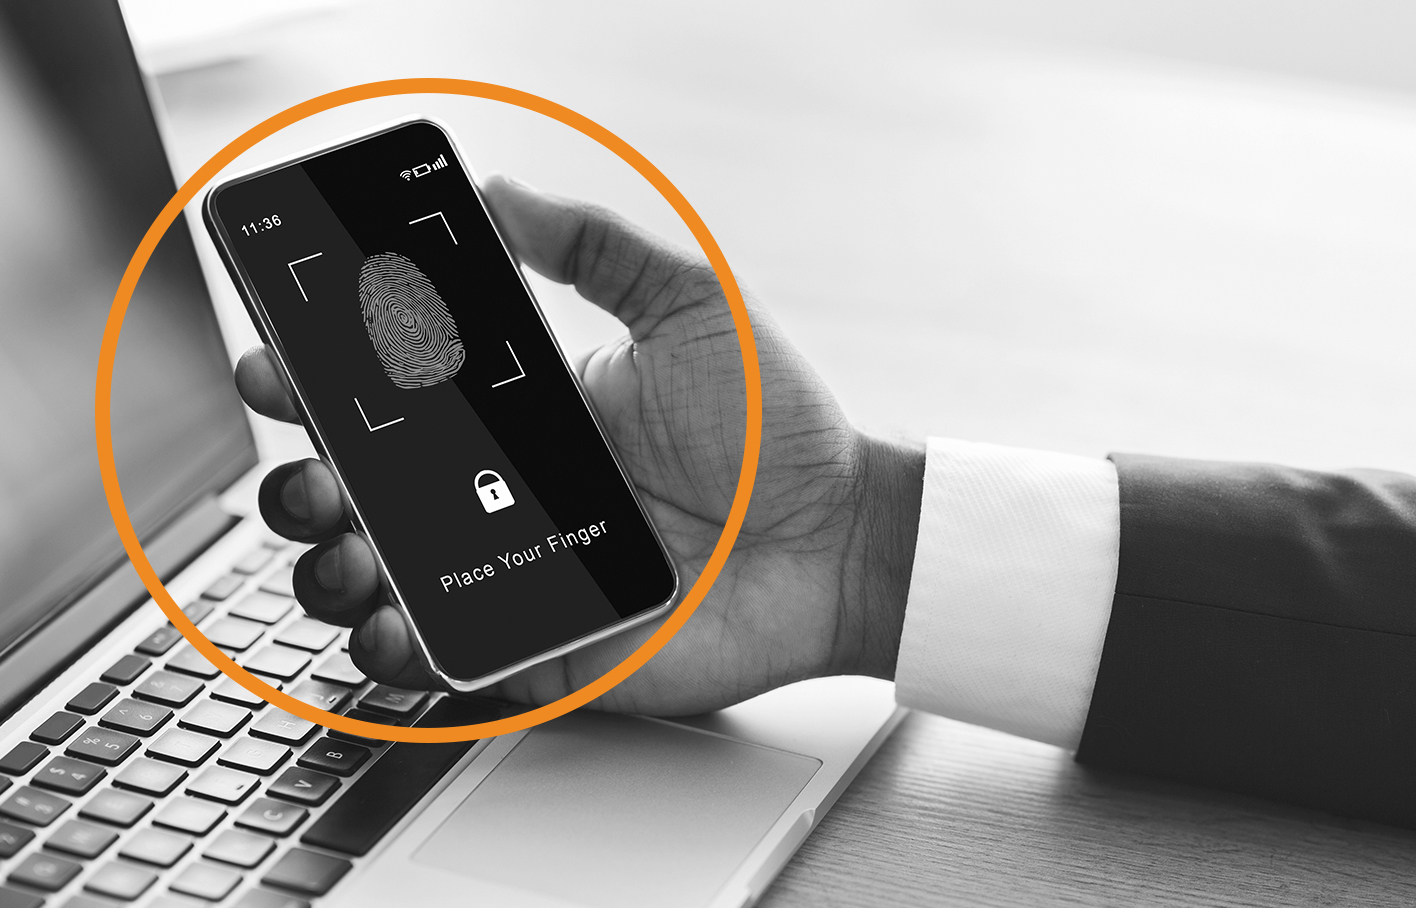 Passwordless Authentication use of a fingerprint